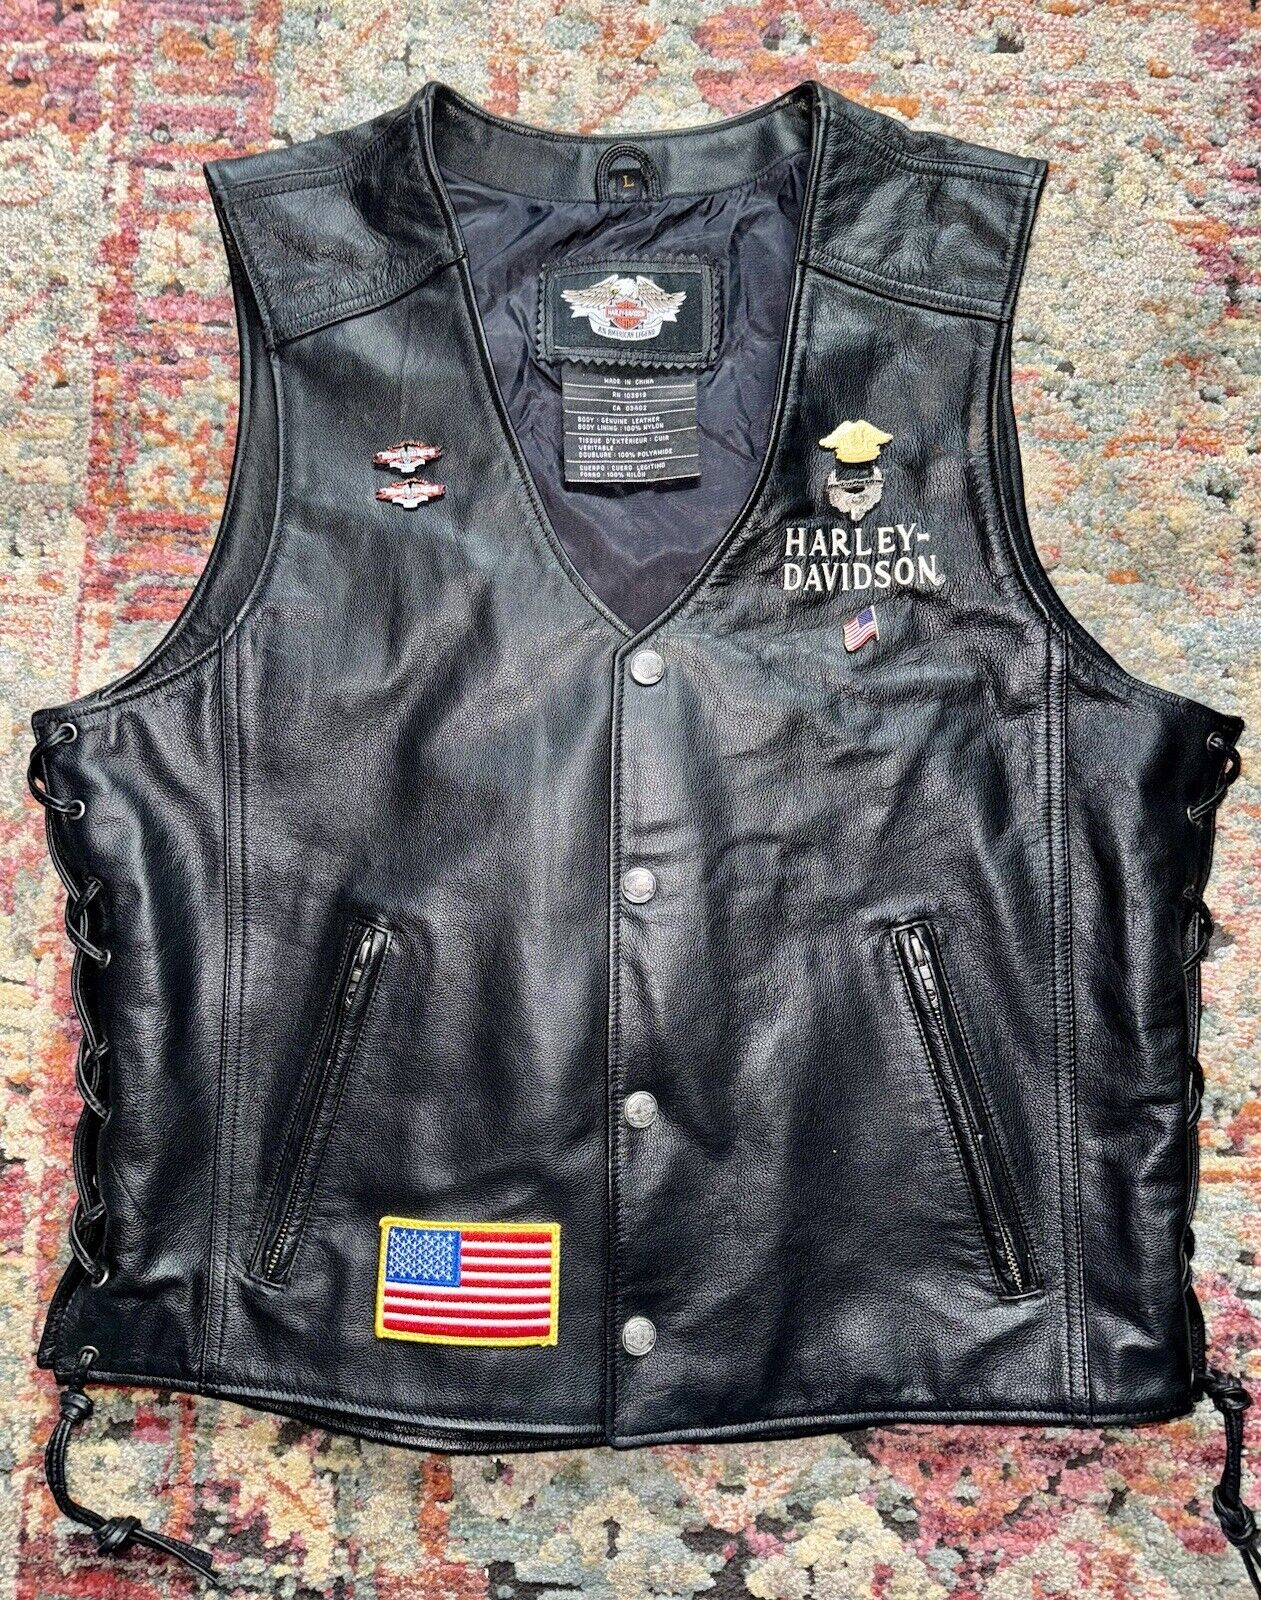 Harley-Davidson “Ride Free” Flames On Back  Men’s Black Leather Vest Size Large